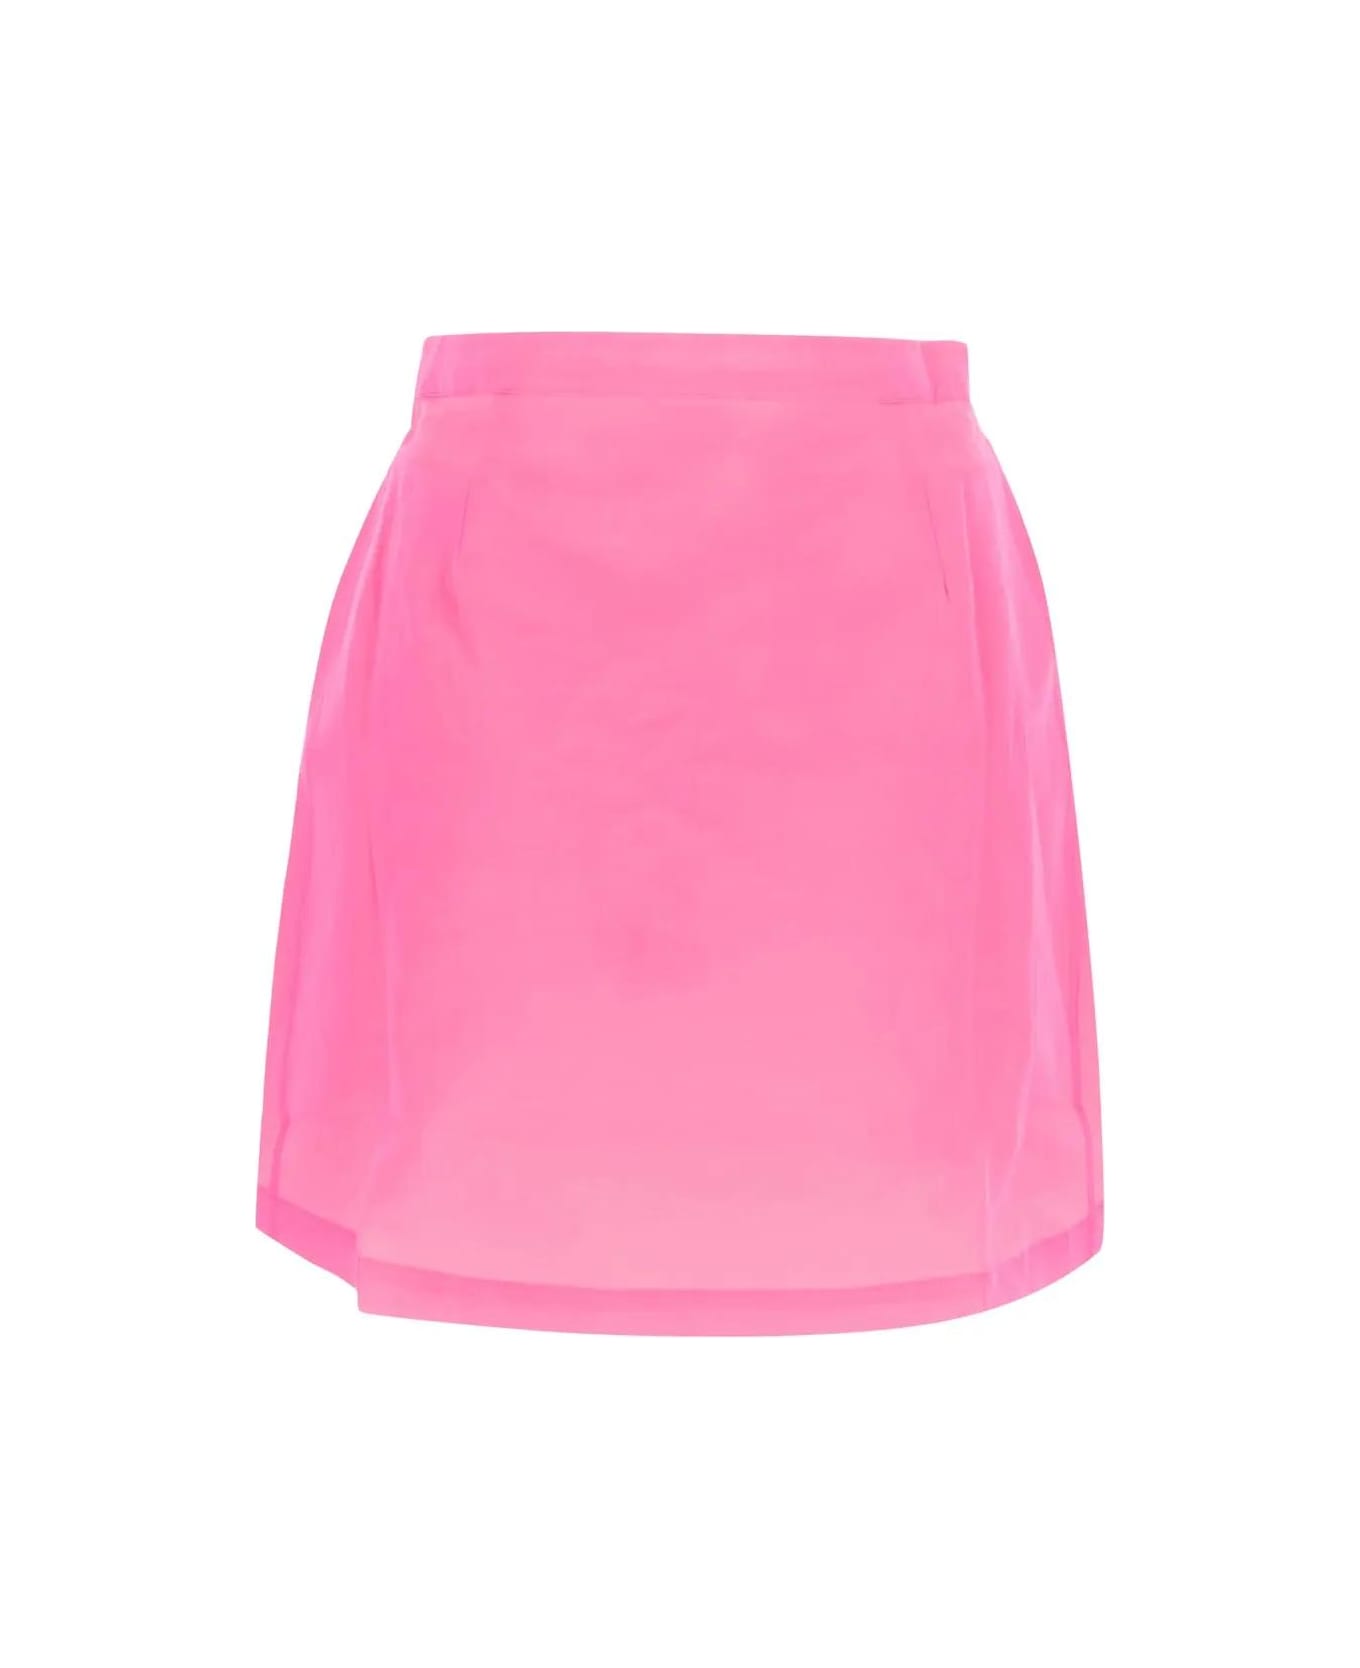 Lido Mini Skirt - Pink